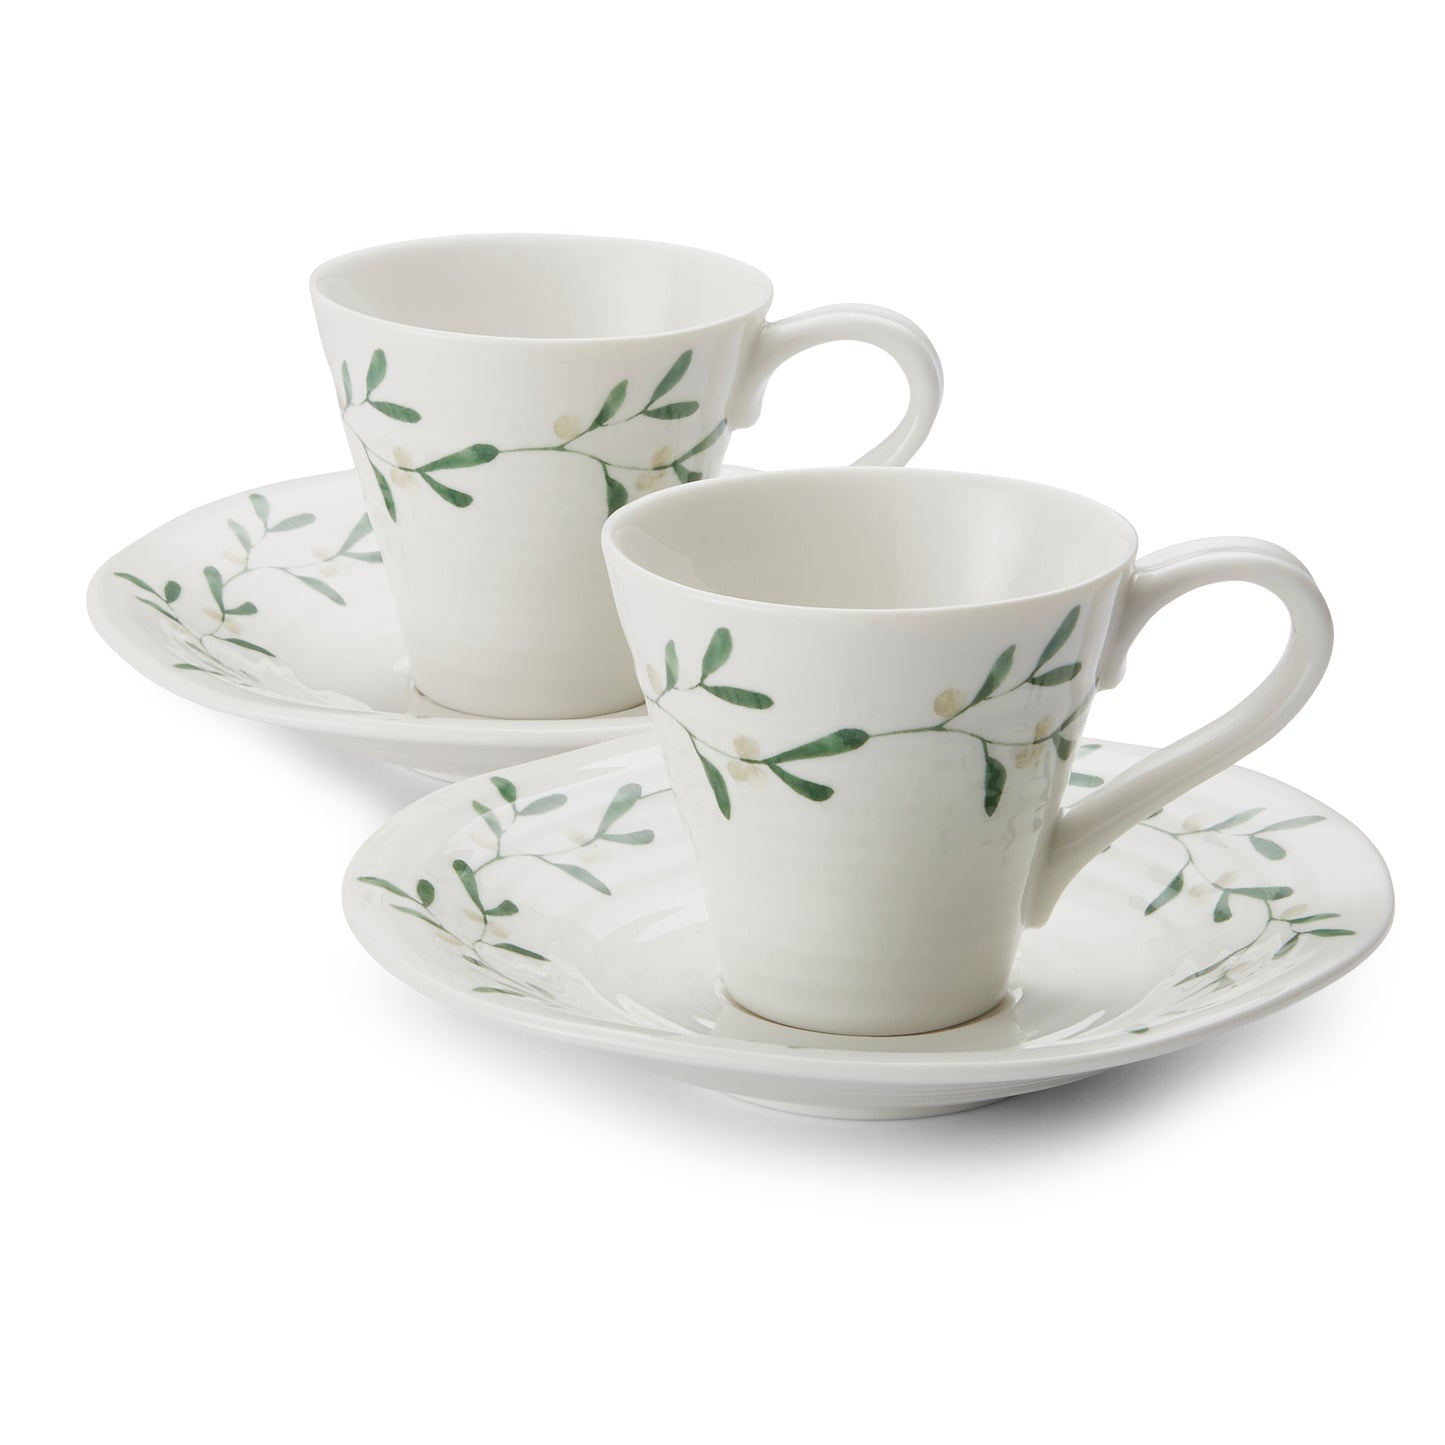 Sophie Conran for Portmeirion Mistletoe 3 fl oz Espresso Cup and Saucers Set of 2